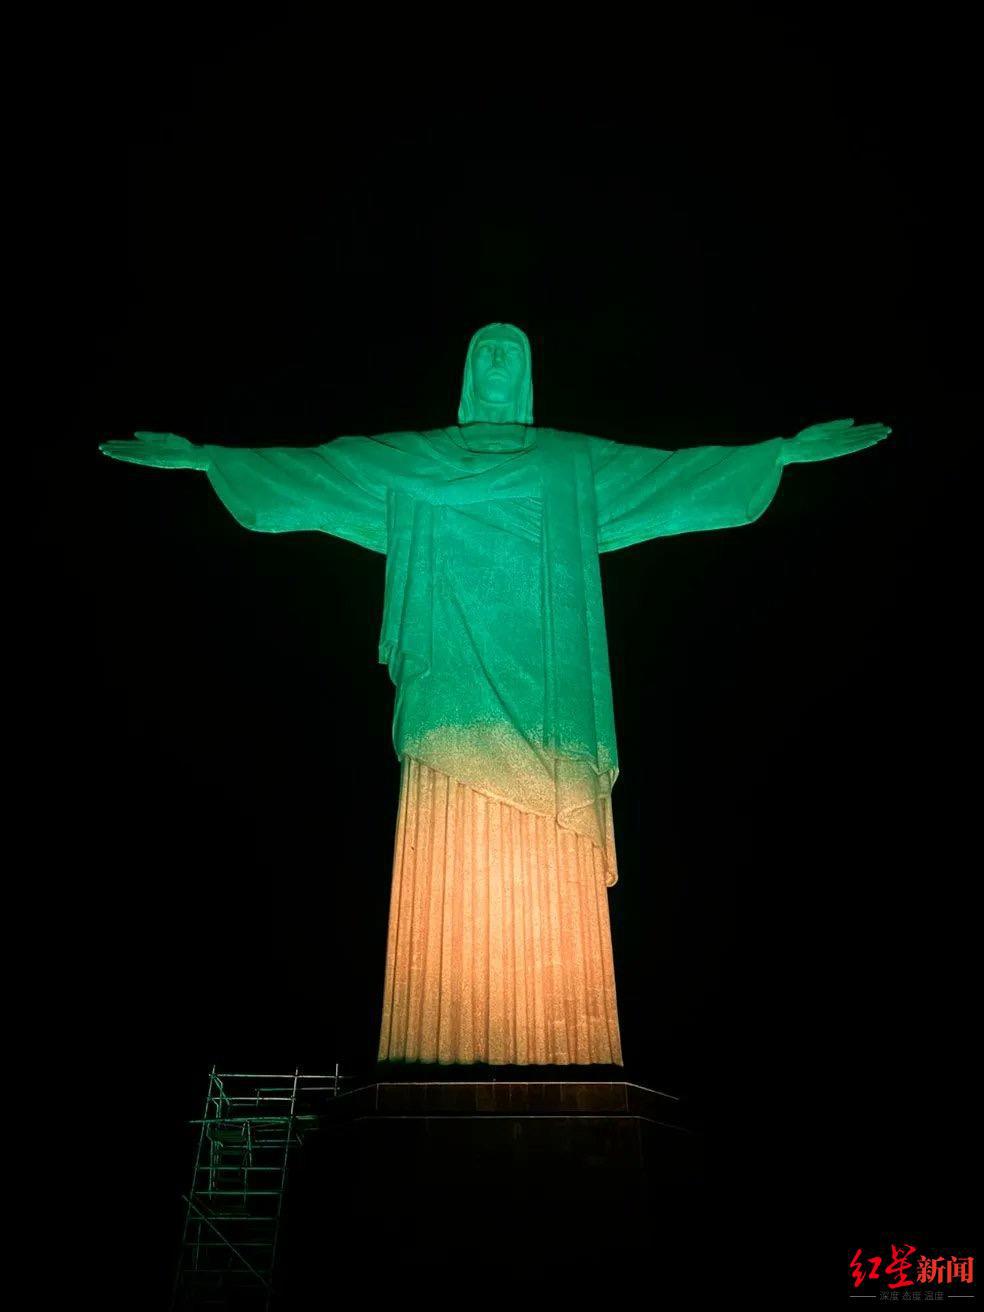 现场丨巴西民众在桑托斯贝利像前献花纪念,圣保罗州将进入7天哀悼期(2)